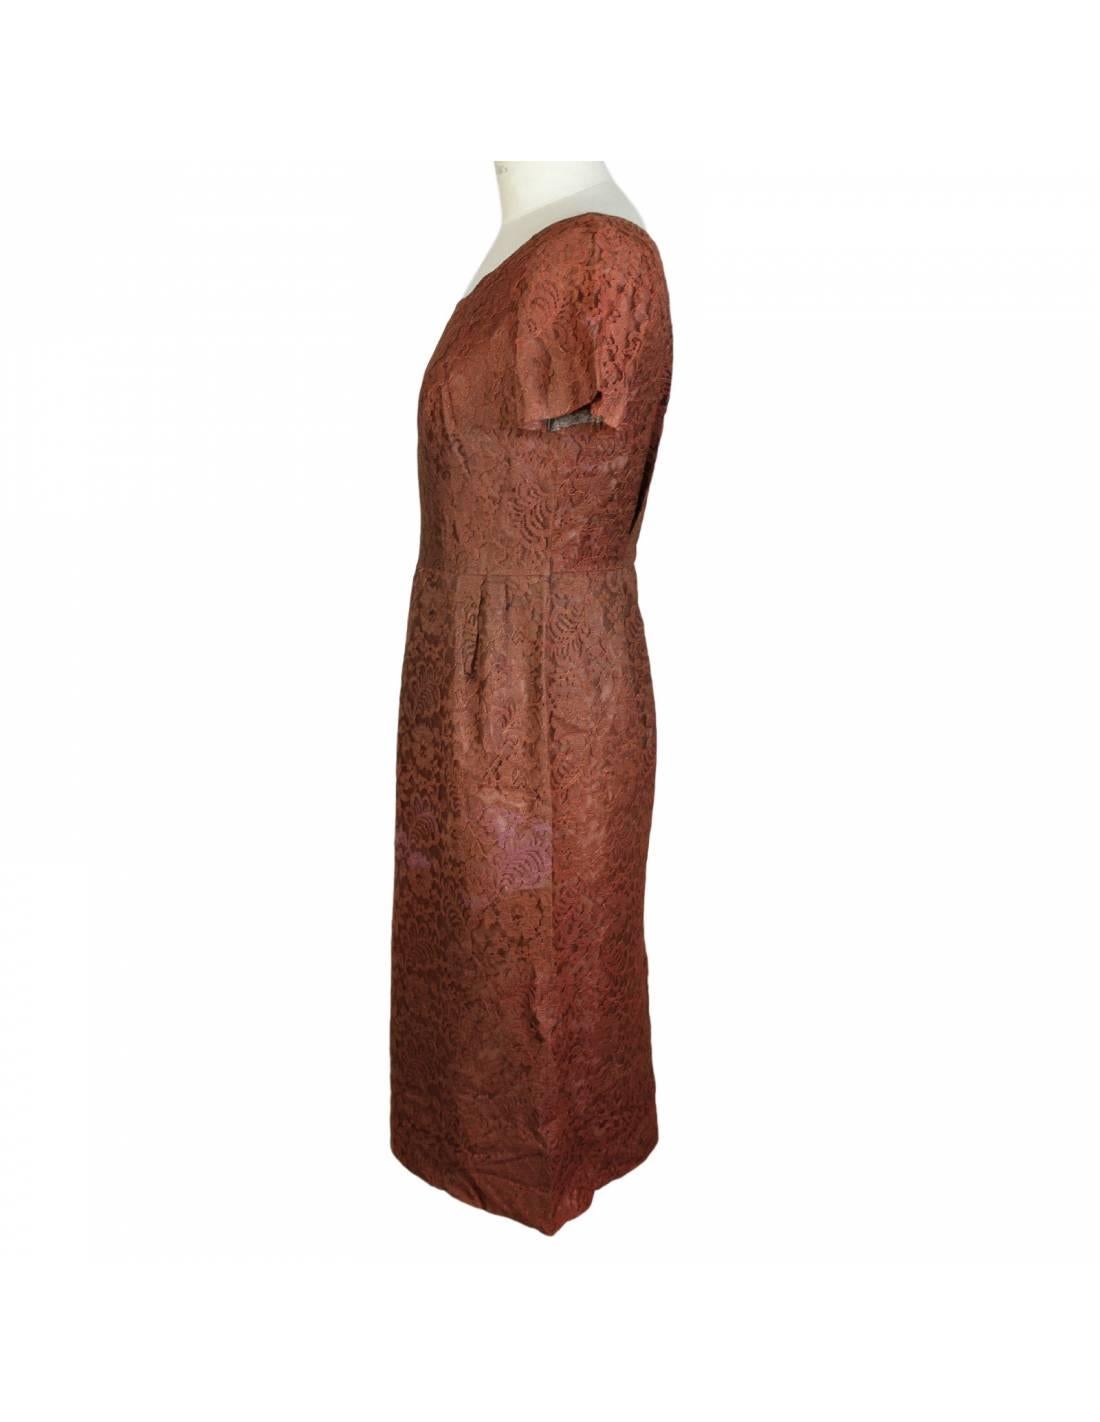 Alberto Fabiani by Puritan Vintage Kleid aus brauner Spitze. Großer italienischer Designer aus den 50er und 70er Jahren.

Das Kleid ist geradlinig, kurzärmelig, vollständig gefüttert und reicht bis über das Knie.

Größe 42 IT 8 US 10 UK

Schultern: